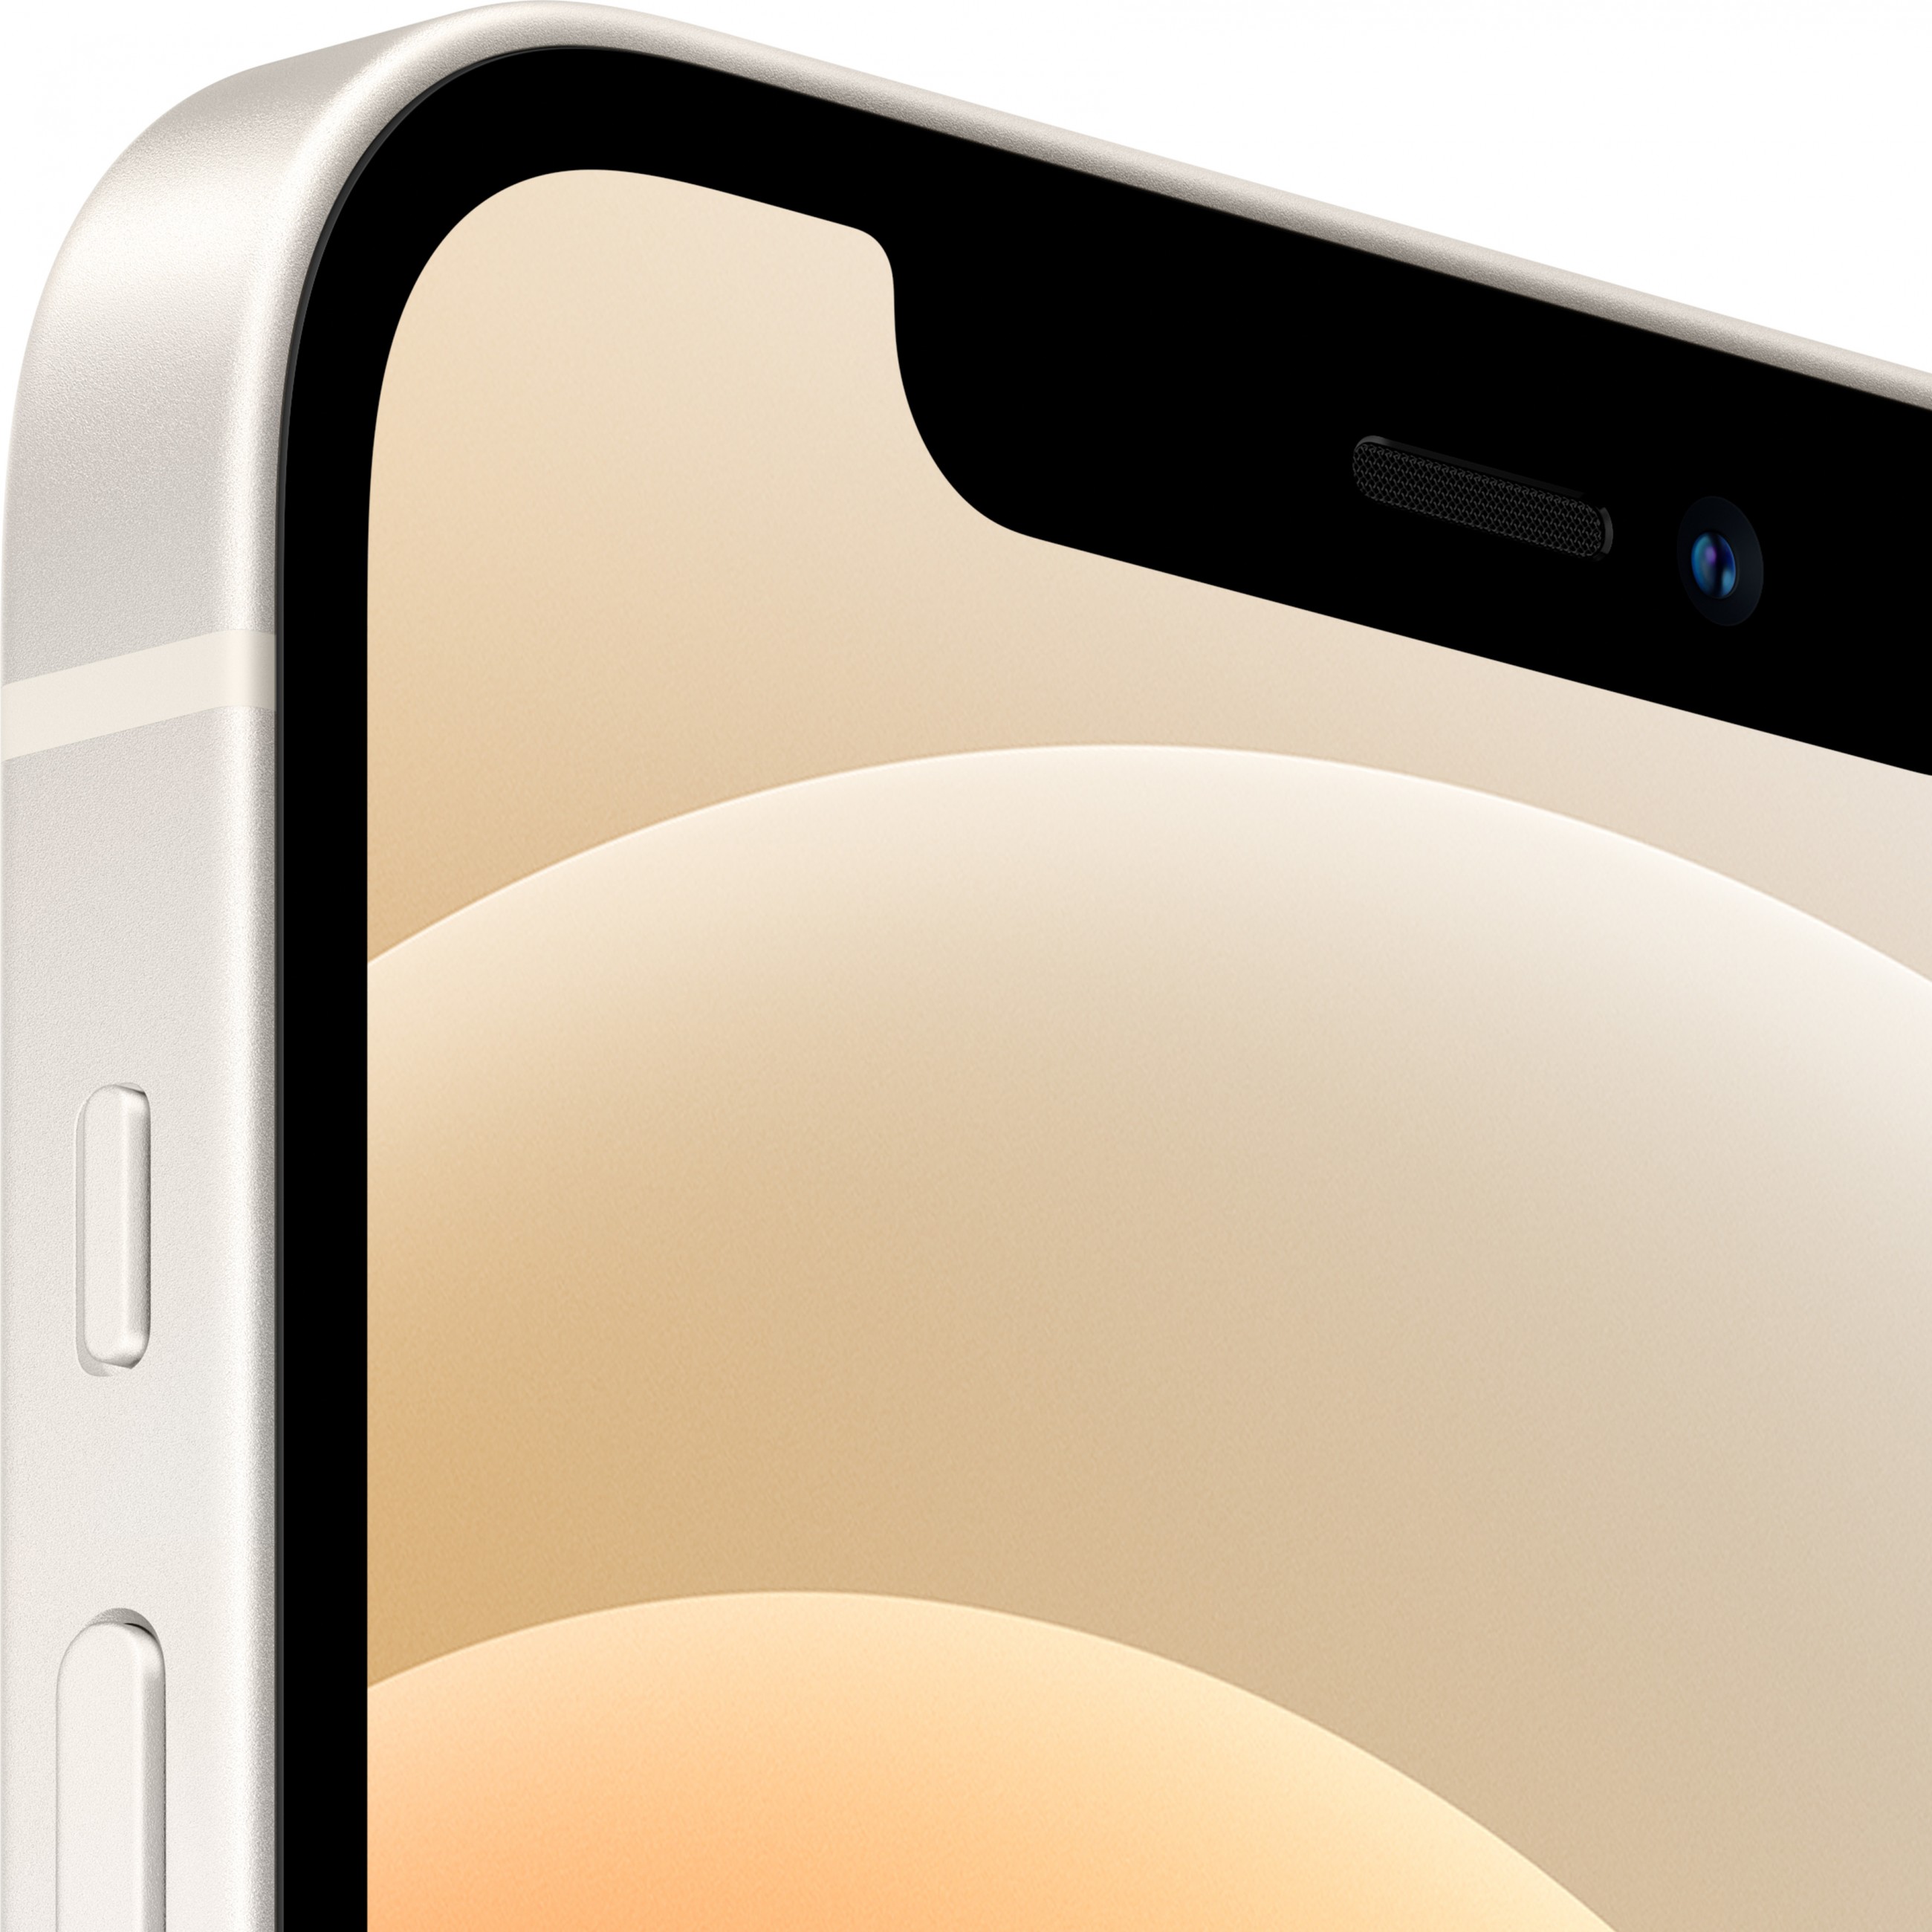 Apple iPhone 12 15,5 cm (6.1 Zoll) Dual-SIM iOS 14 5G 256 GB Weiß